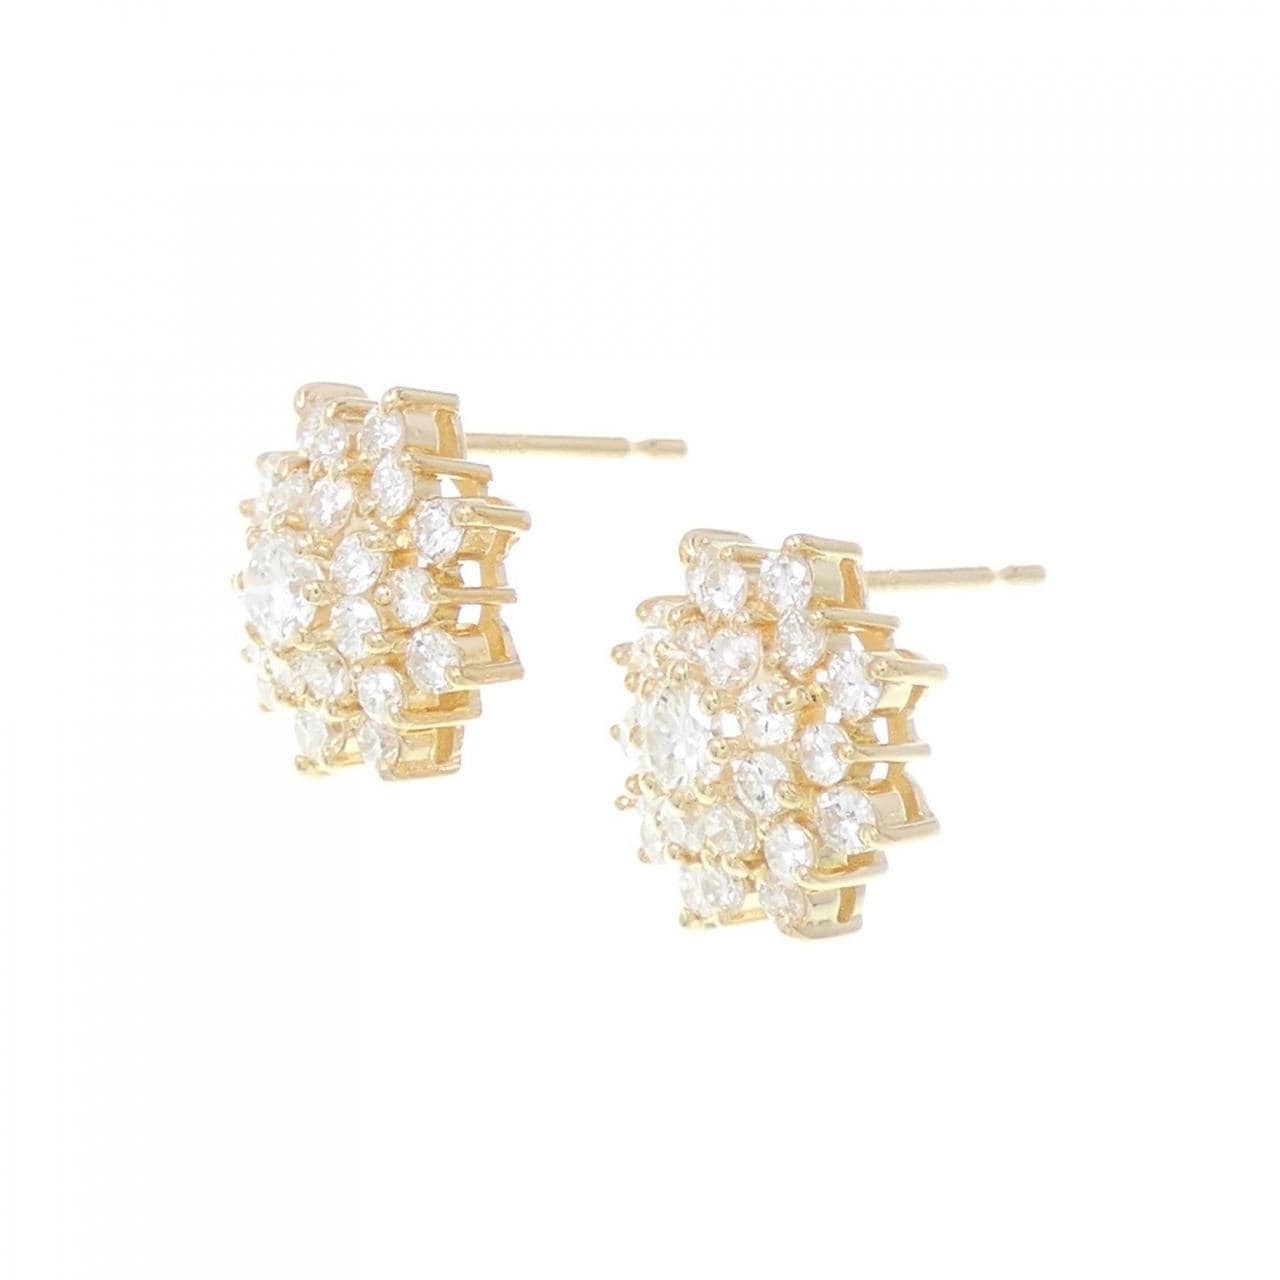 K18YG flower Diamond earrings 1.00CT